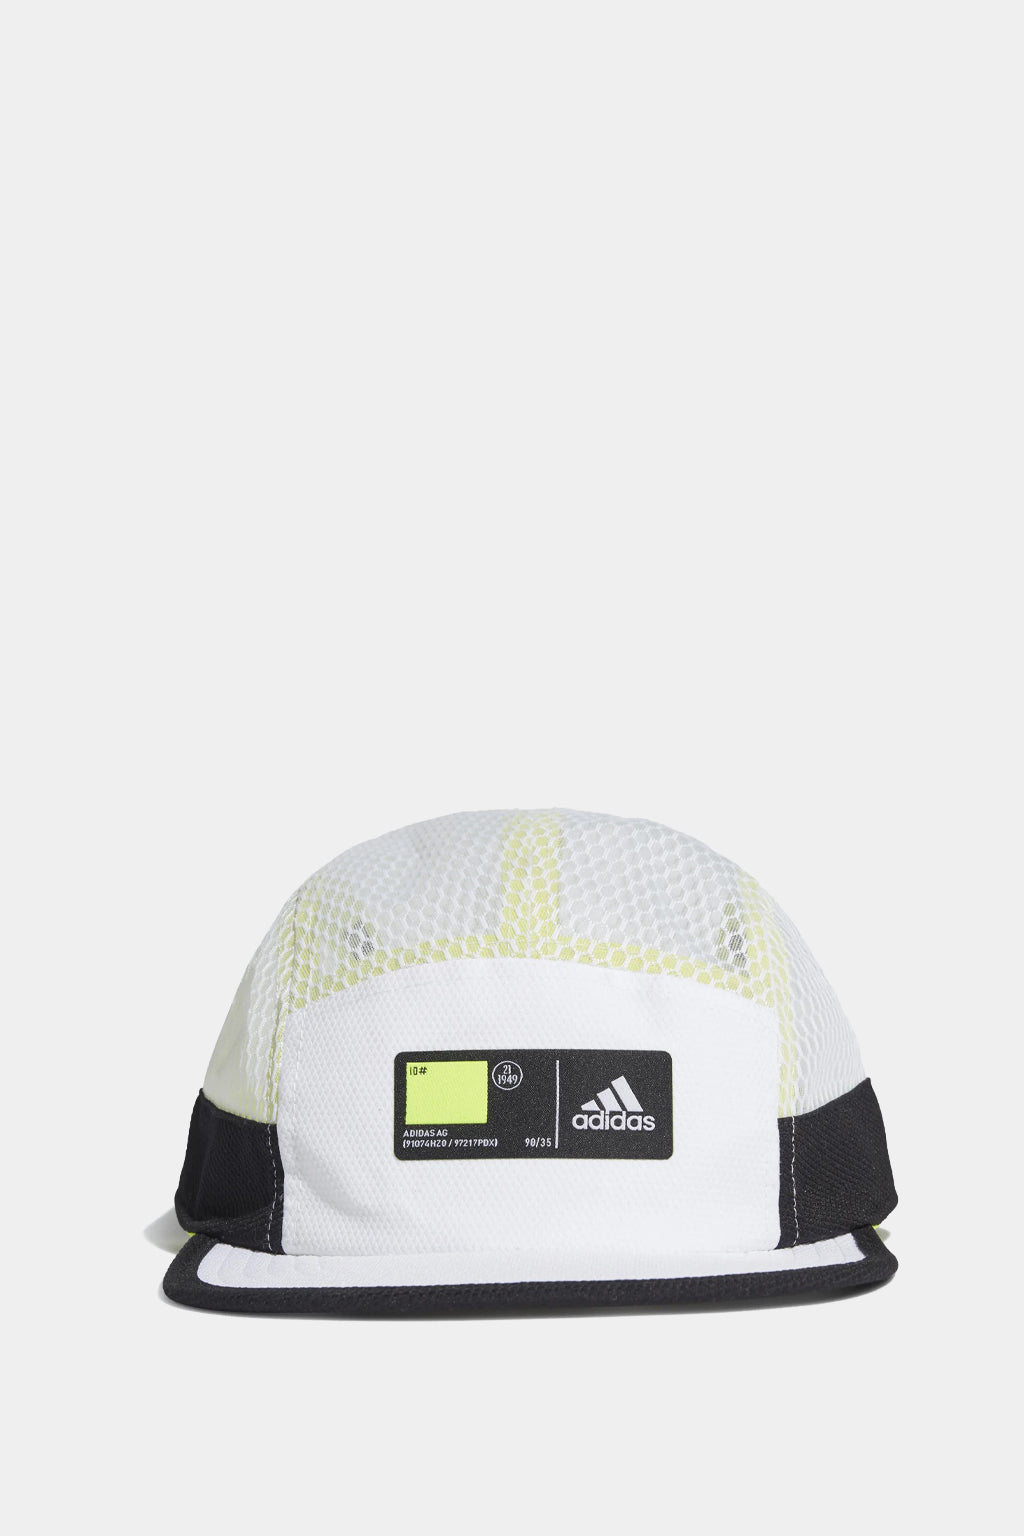 Adidas Originals - Five-panel Athletics Cap